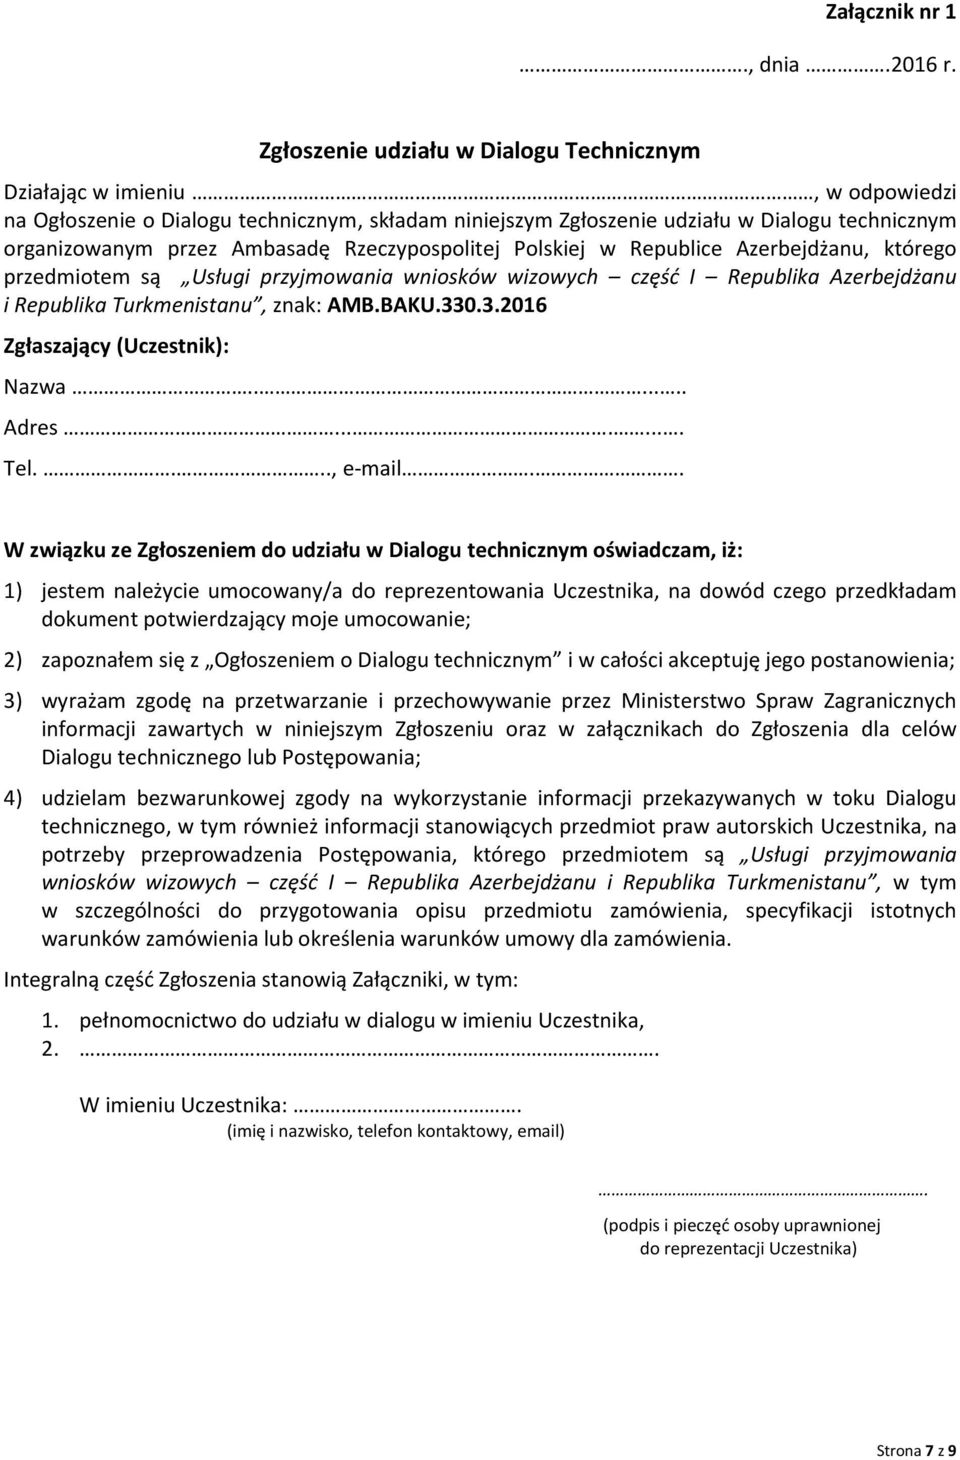 Ambasadę Rzeczypospolitej Polskiej w Republice Azerbejdżanu, którego przedmiotem są Usługi przyjmowania wniosków wizowych część I Republika Azerbejdżanu i Republika Turkmenistanu, znak: AMB.BAKU.330.